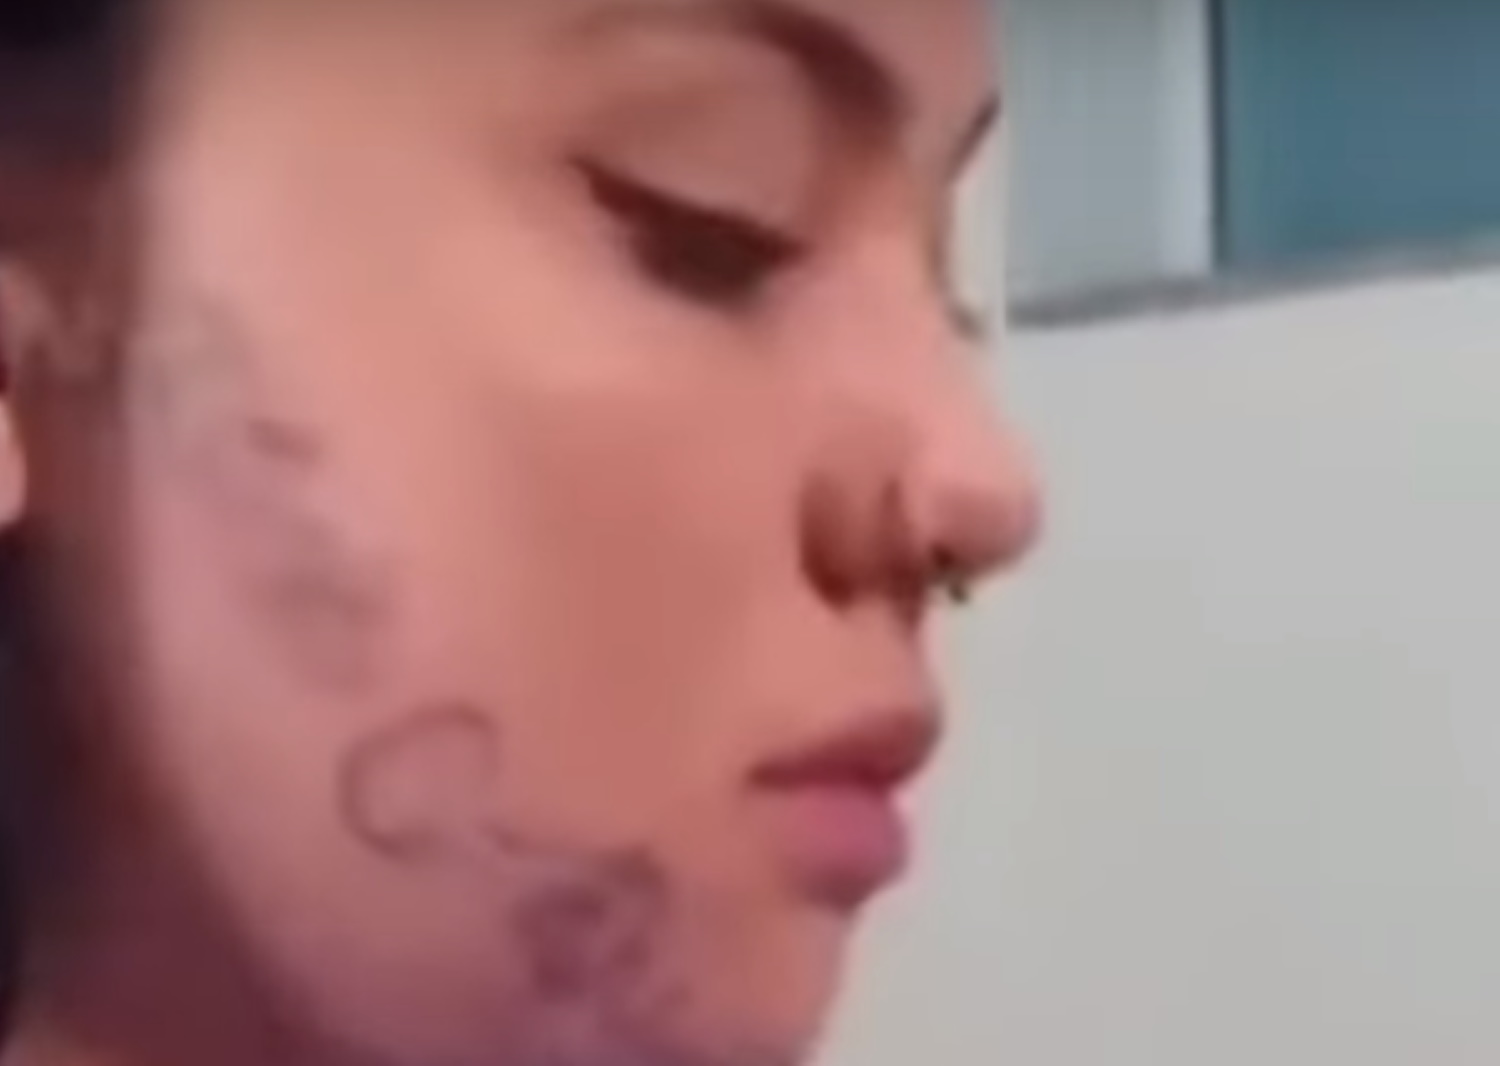 Βραζιλία: «Χτύπησε» τατουάζ το όνομά του στο πρόσωπό της για εκδίκηση επειδή τον χώρισε